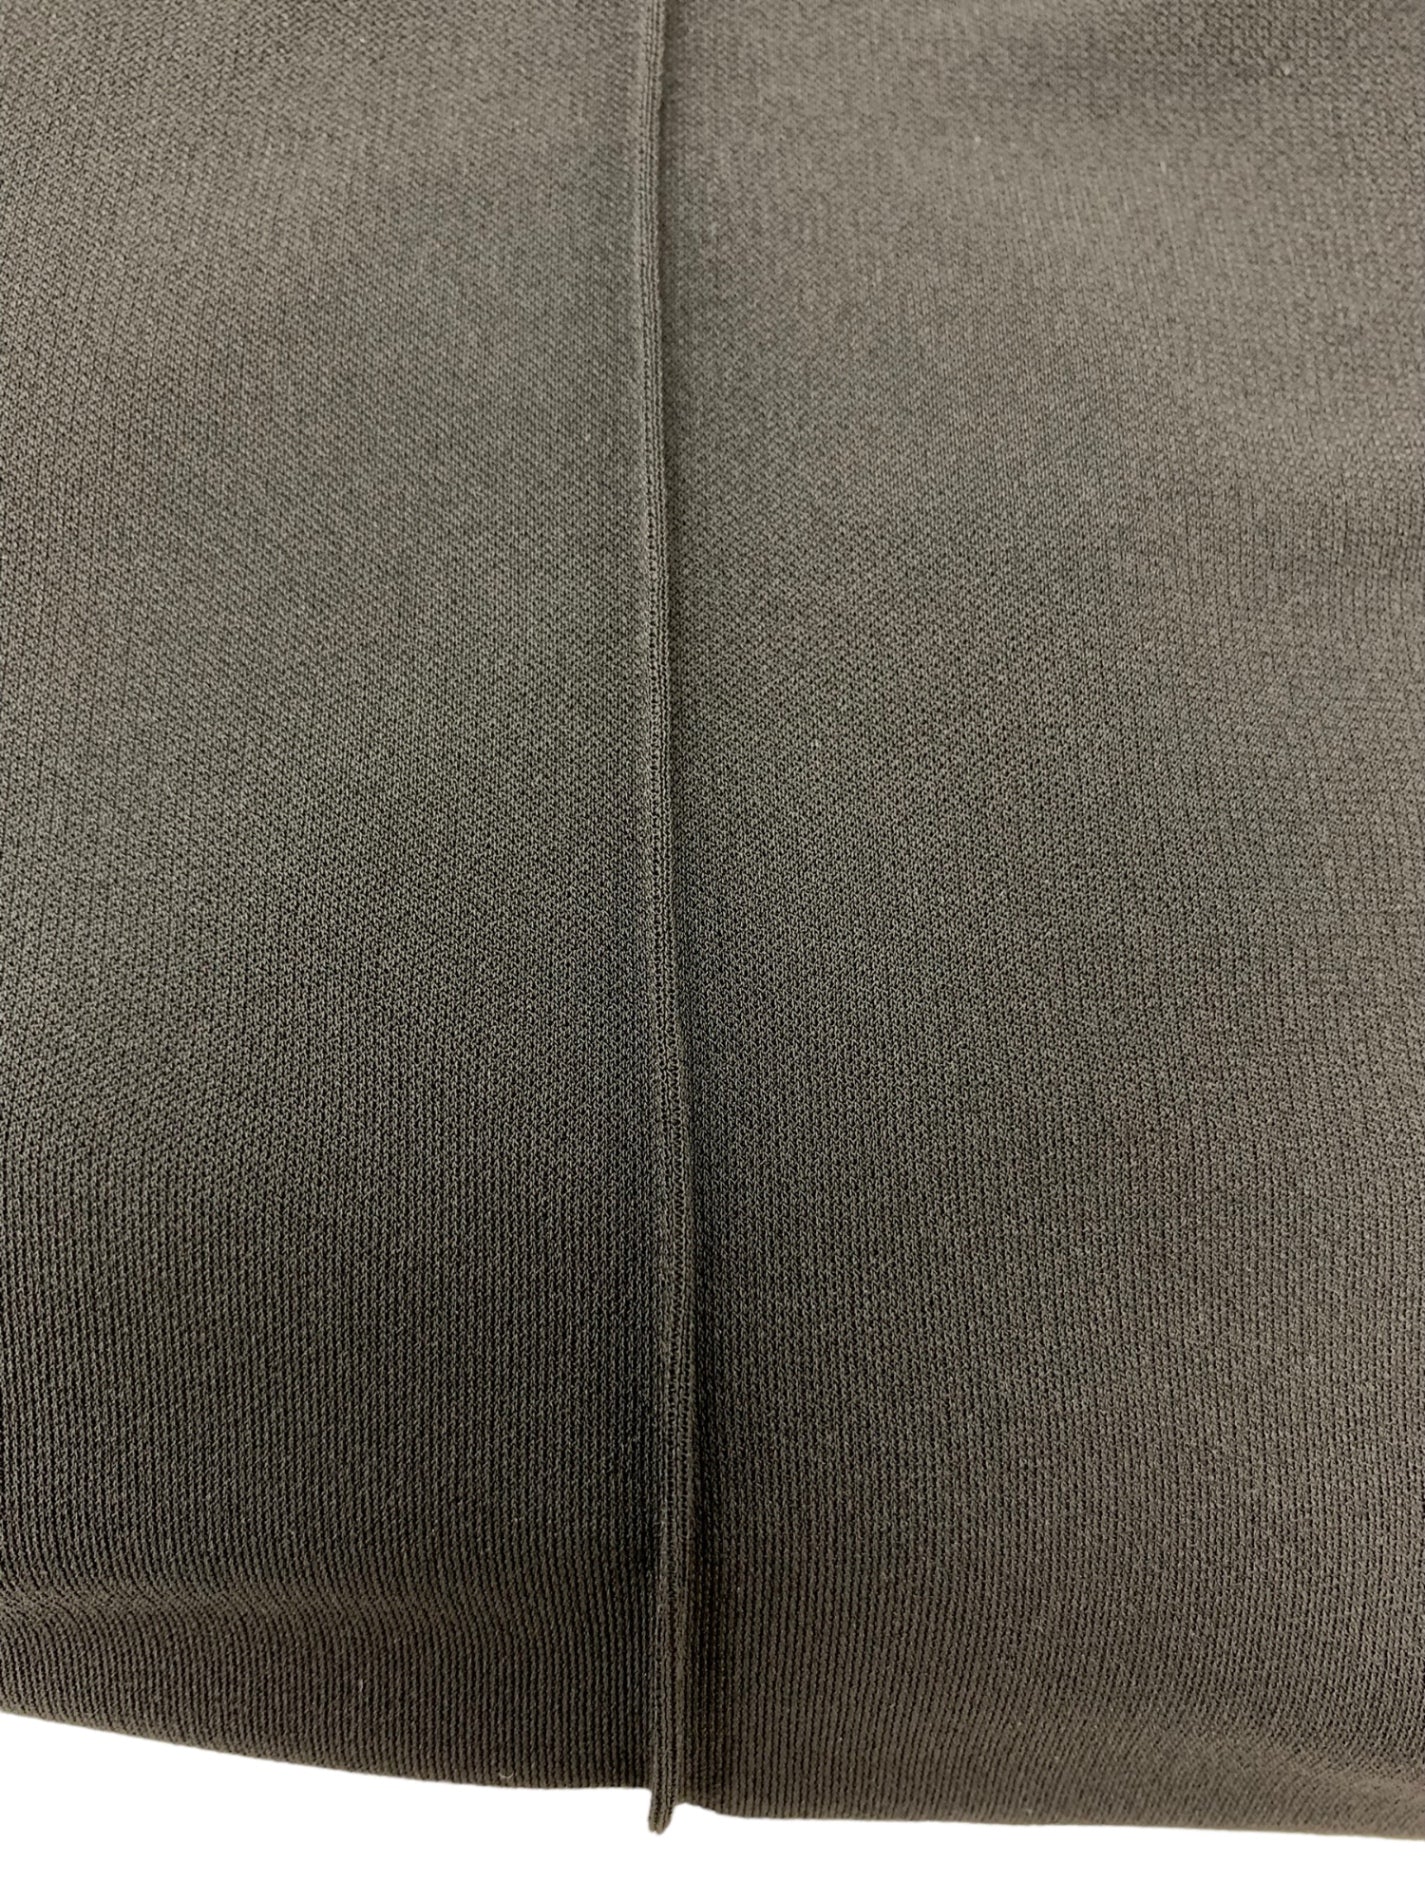 フォクシーニューヨーク Silver シルバー Pants 43002 パンツ 38 ブラック | 中古ブランド品・古着通販ビープライス